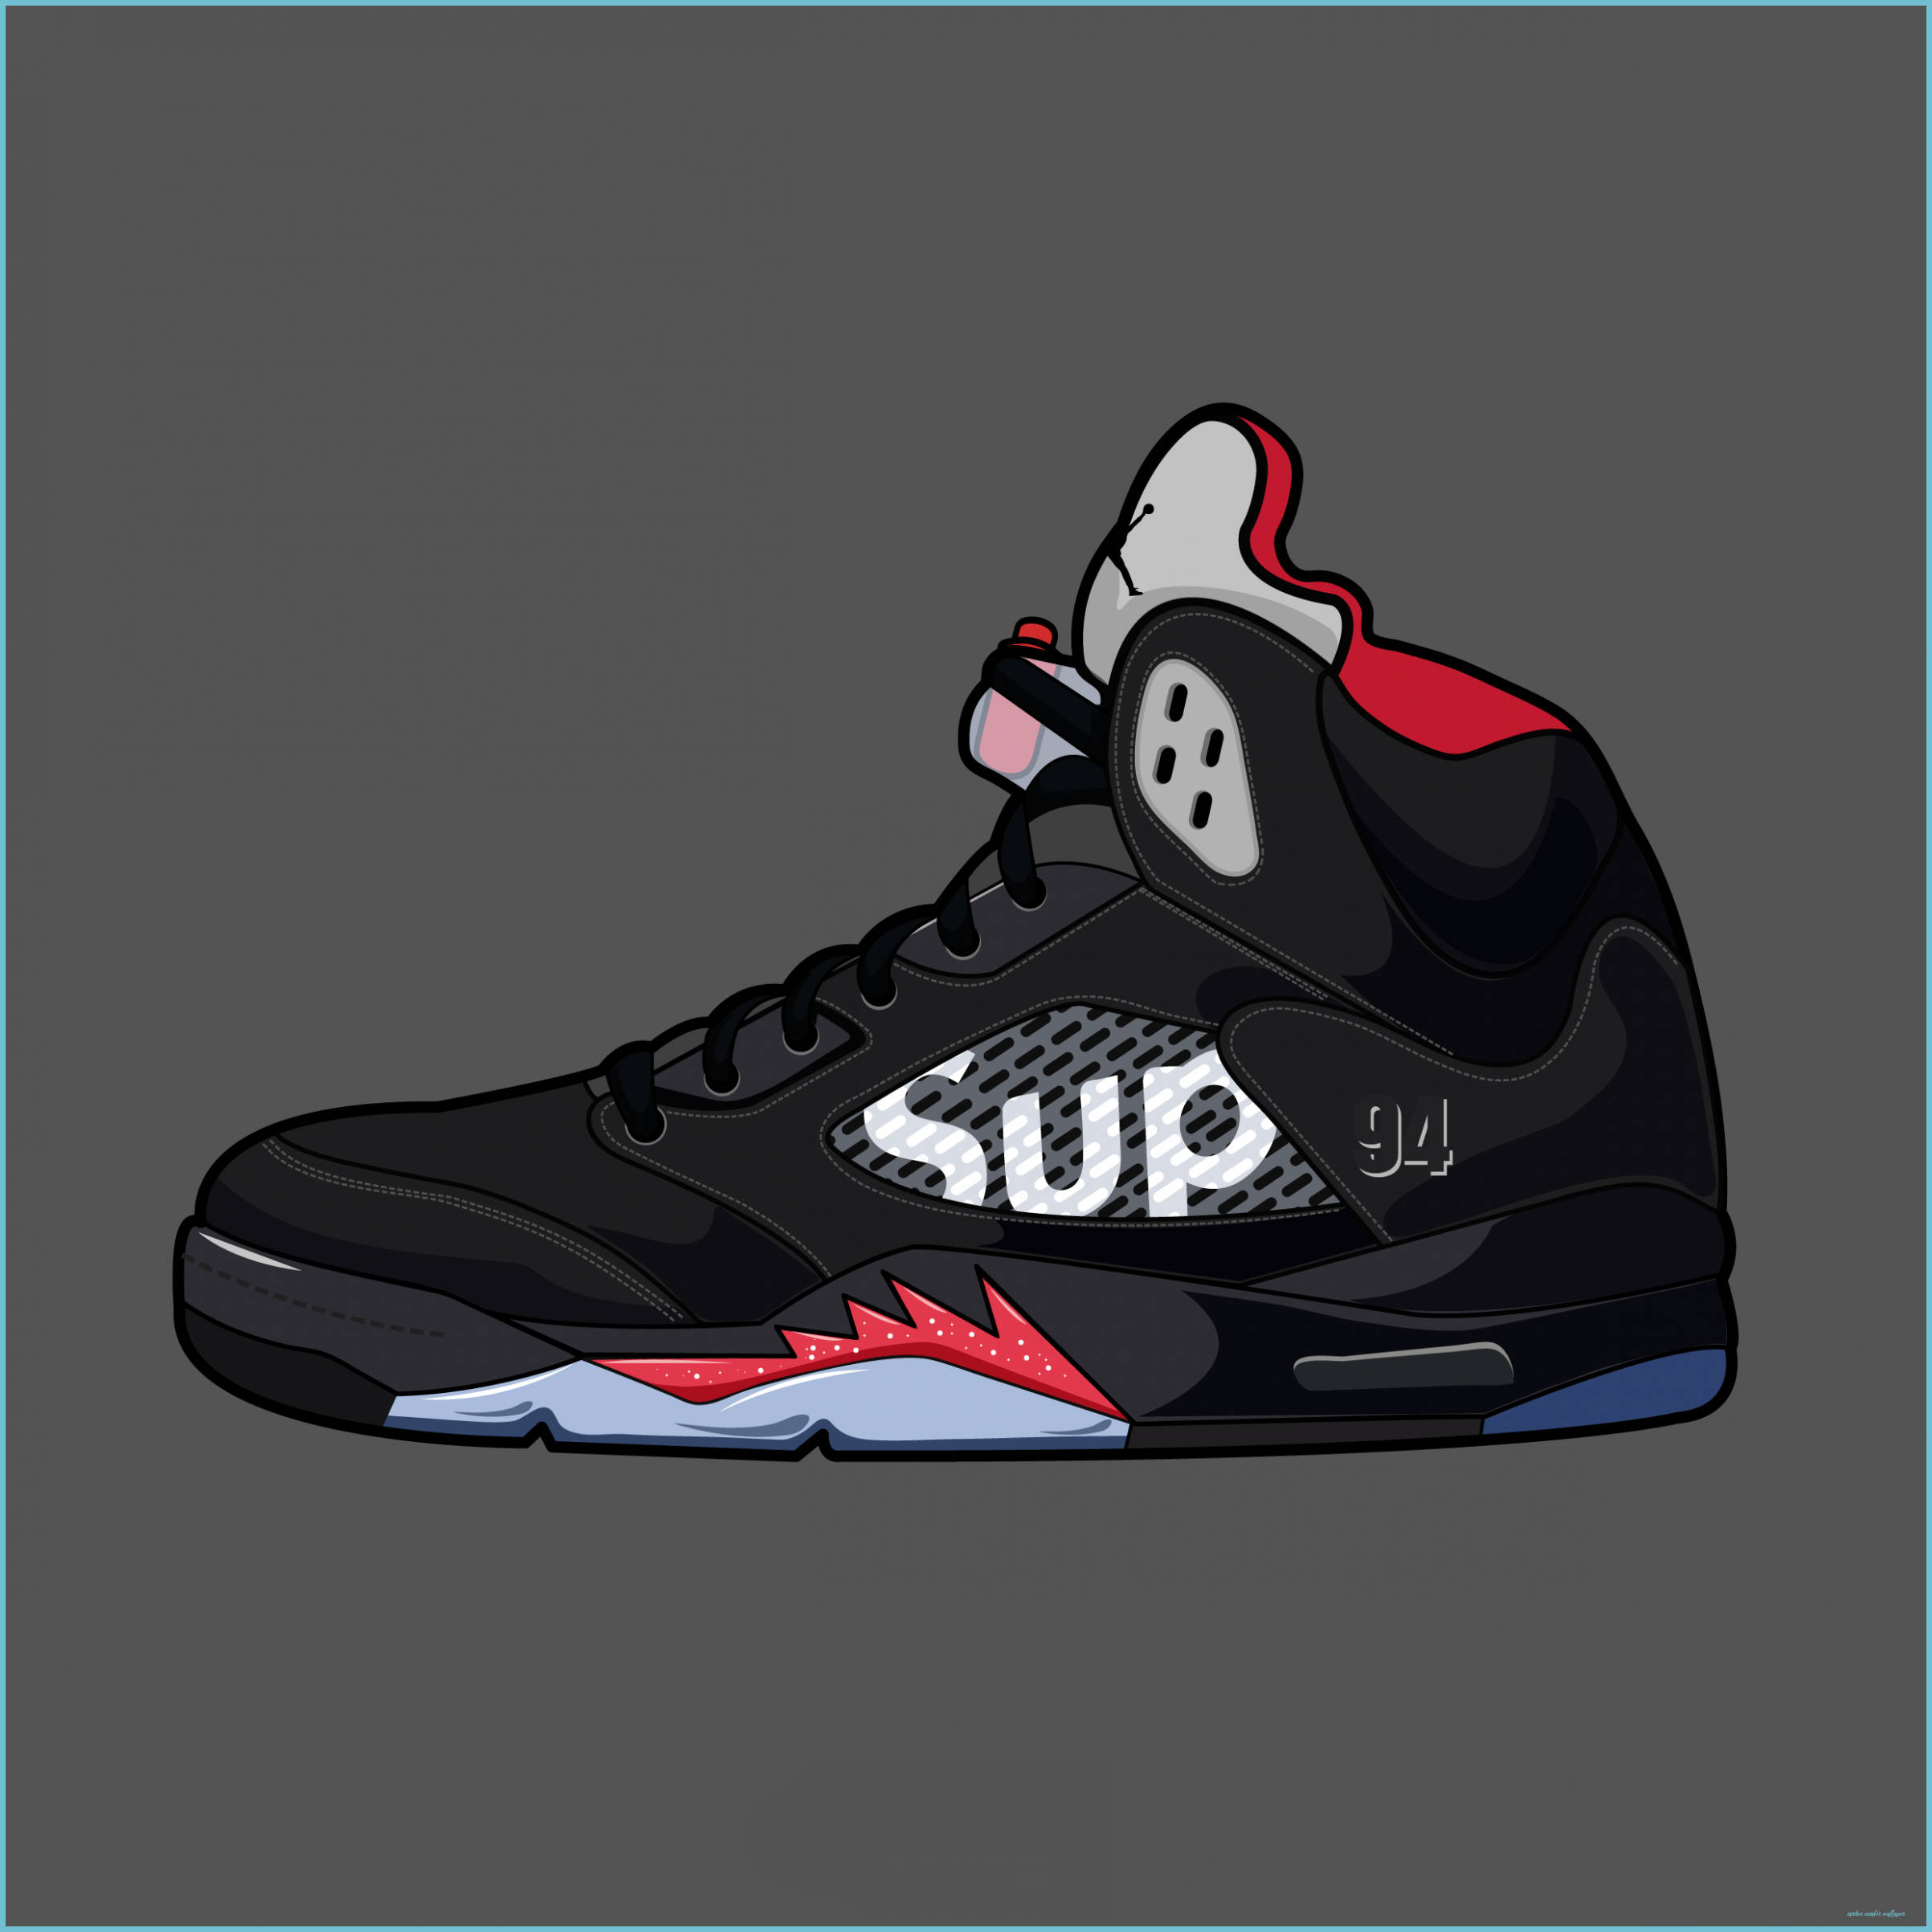 Jordan 5 Cartoon Shoe Wallpaper